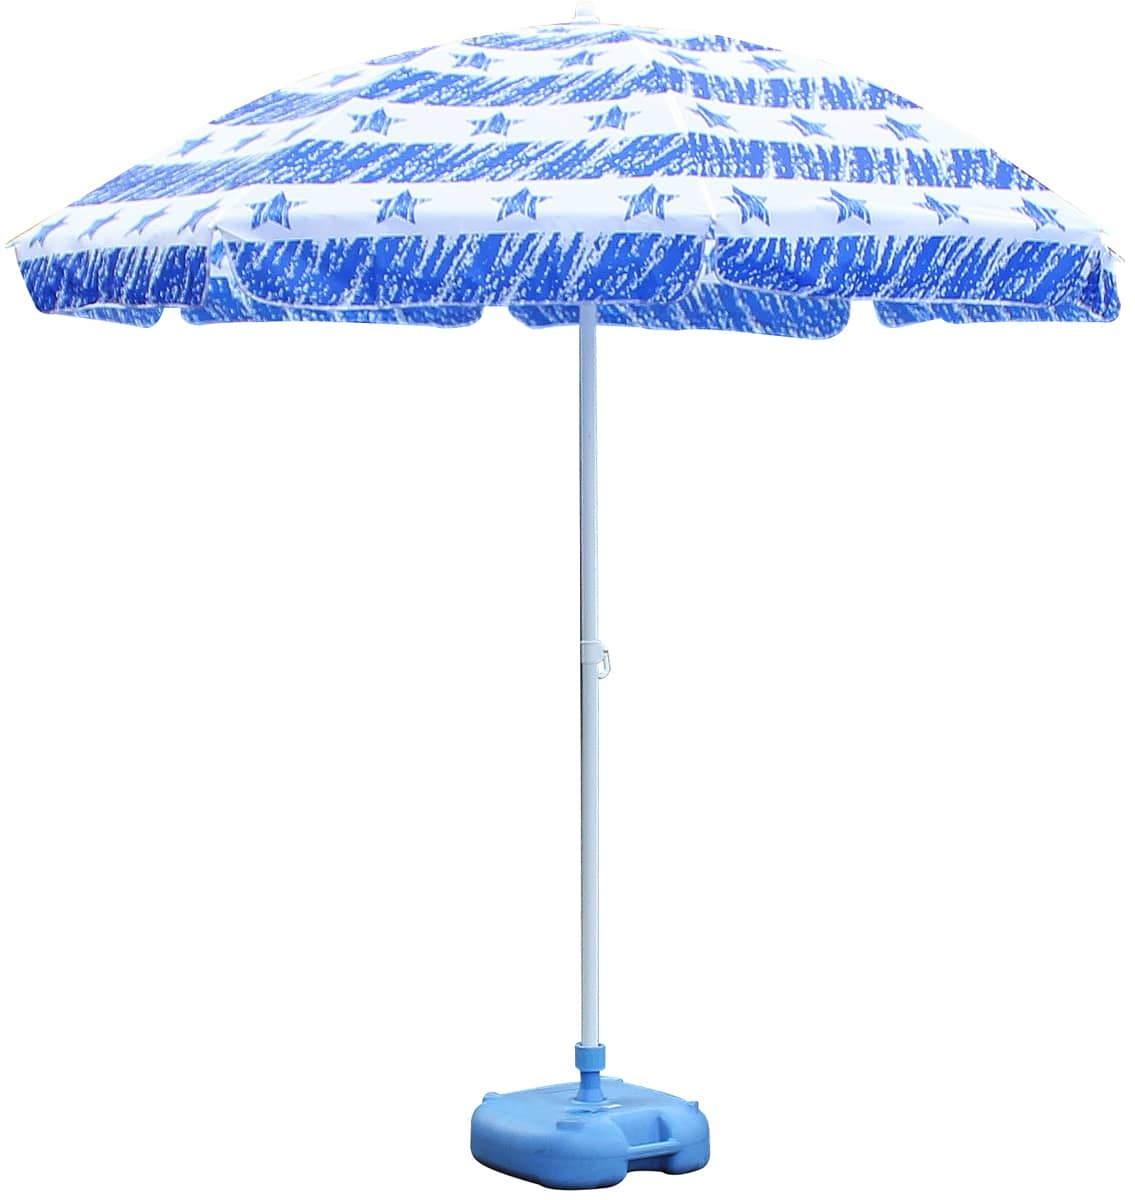 Field to Summit blue star зонт 240 OFP240BS пляжный зонт UV cut наклон функция морской спорт навес затеняющий экран, шторки от солнца . средний . меры ультрафиолетовые лучи меры море 